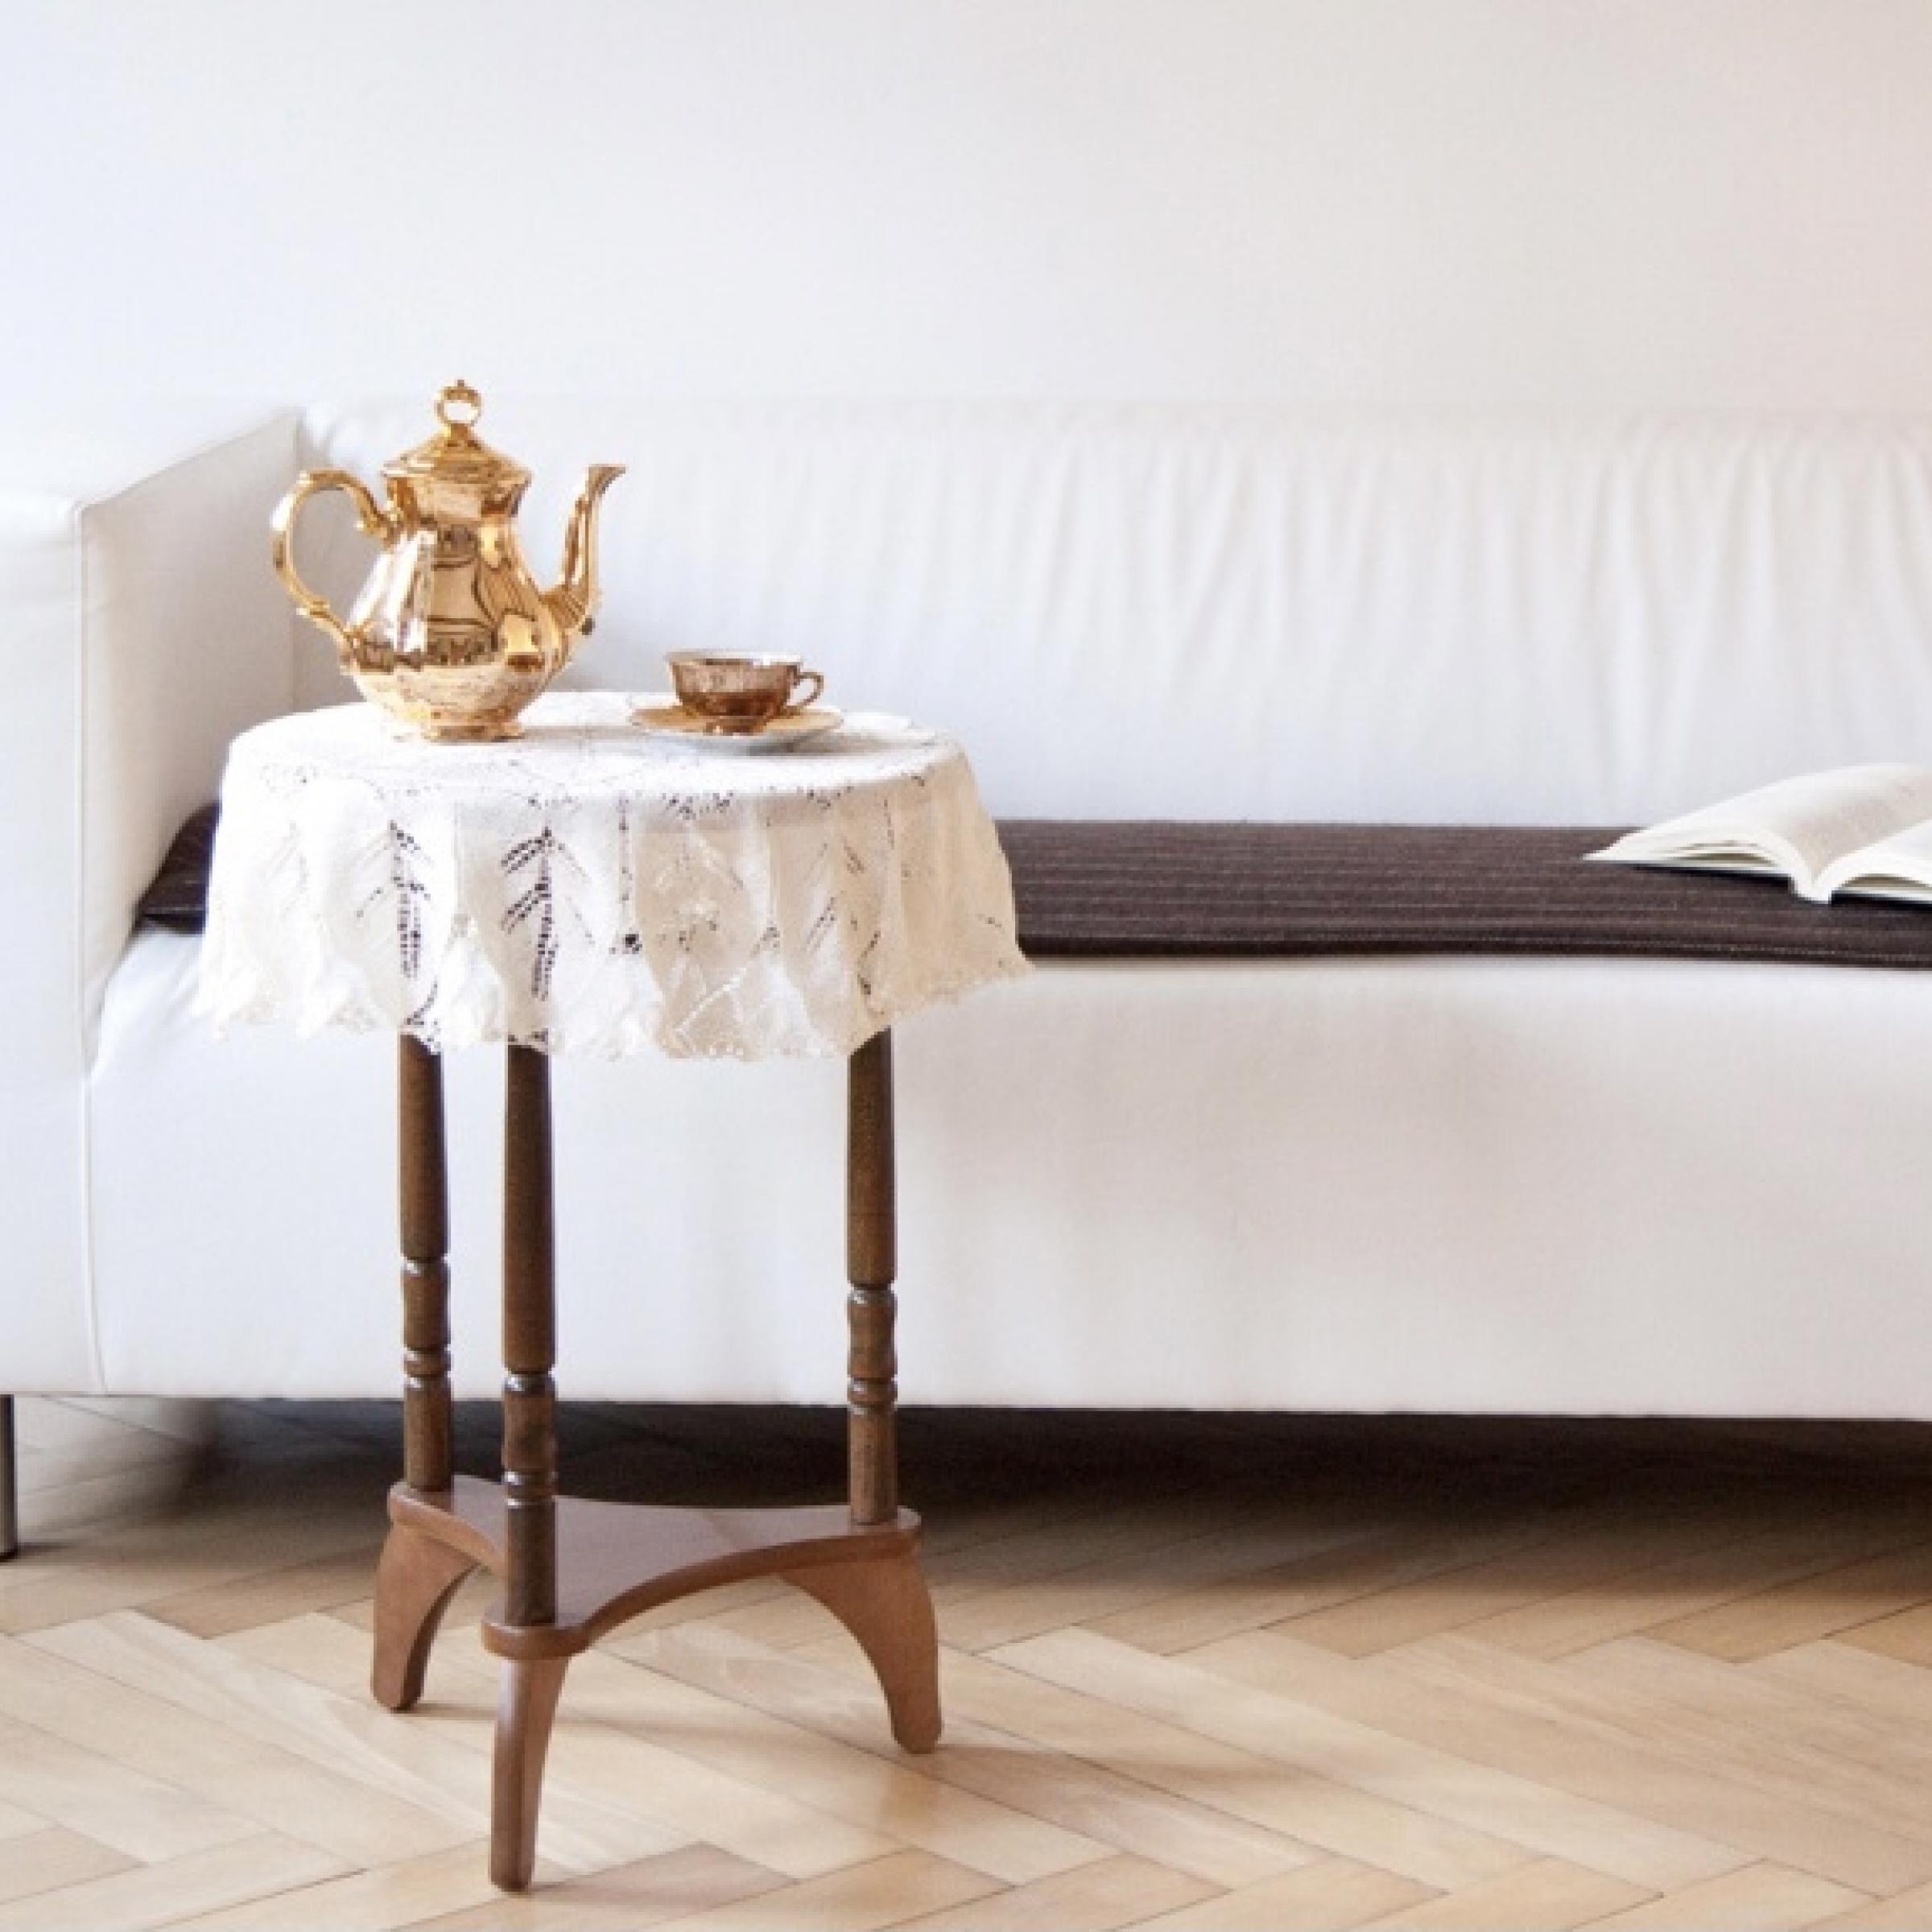 Das Foto zeigt ein weißes Sofa, auf dem ein aufgeschlagenes Buch liegt. Vor dem Sofa steht ein rundes Holztischchen, auf dem eine goldene Kaffeekanne und eine goldene Tasse stehen. Das Bild strahlt Ruhe aus und lädt zum Innehalten ein.